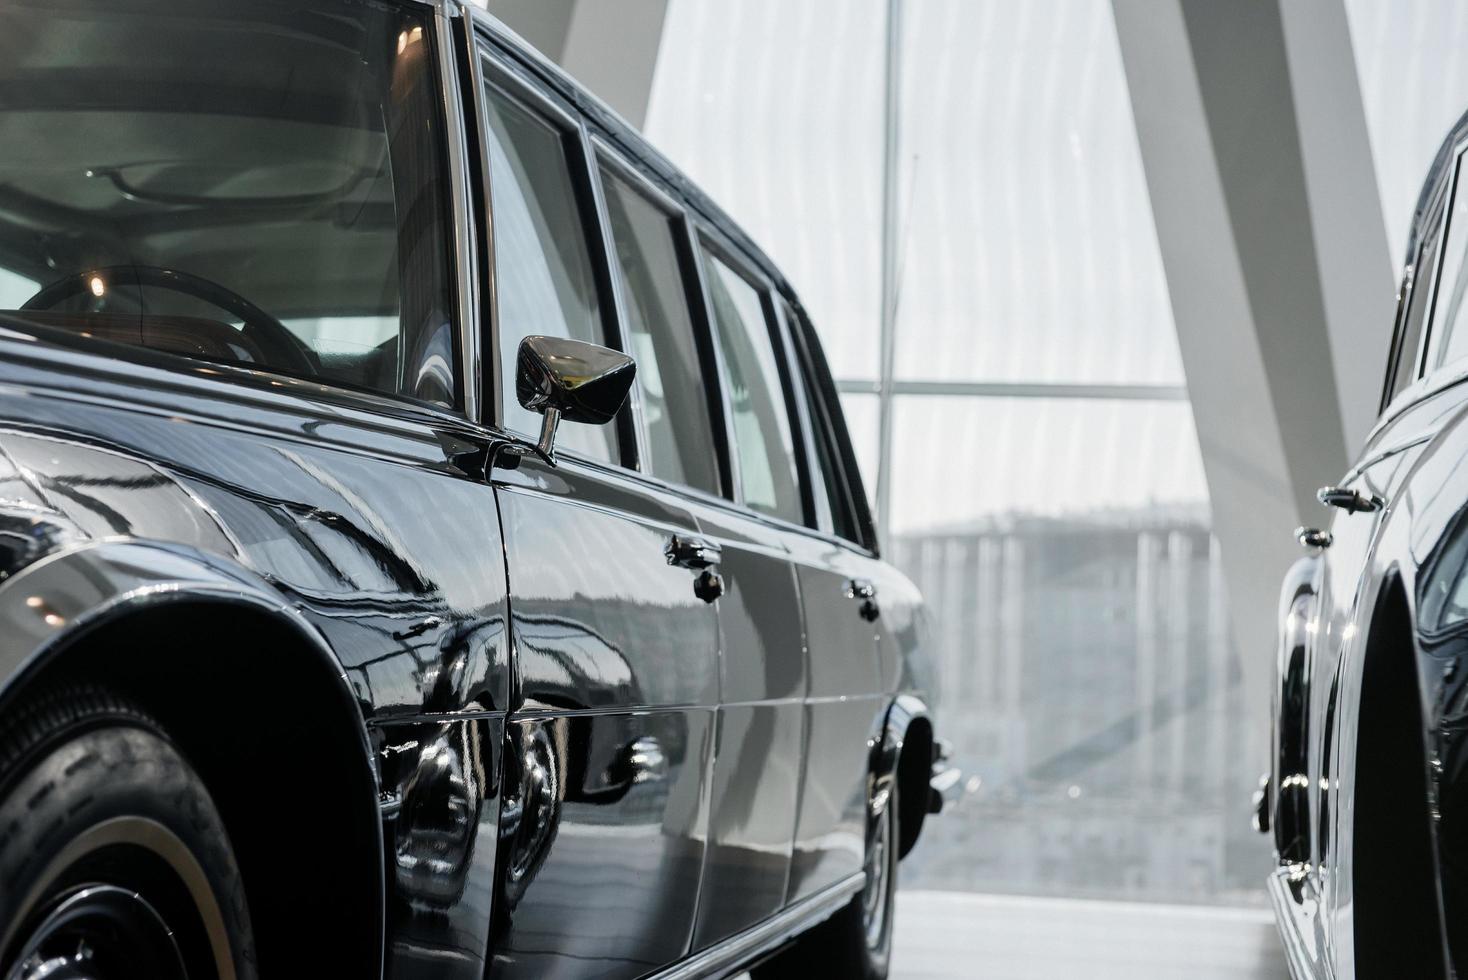 vista da limusine preta retro da classe executiva do lado do motorista com espelho cromado estacionada perto de outro carro antigo em um prédio leve foto